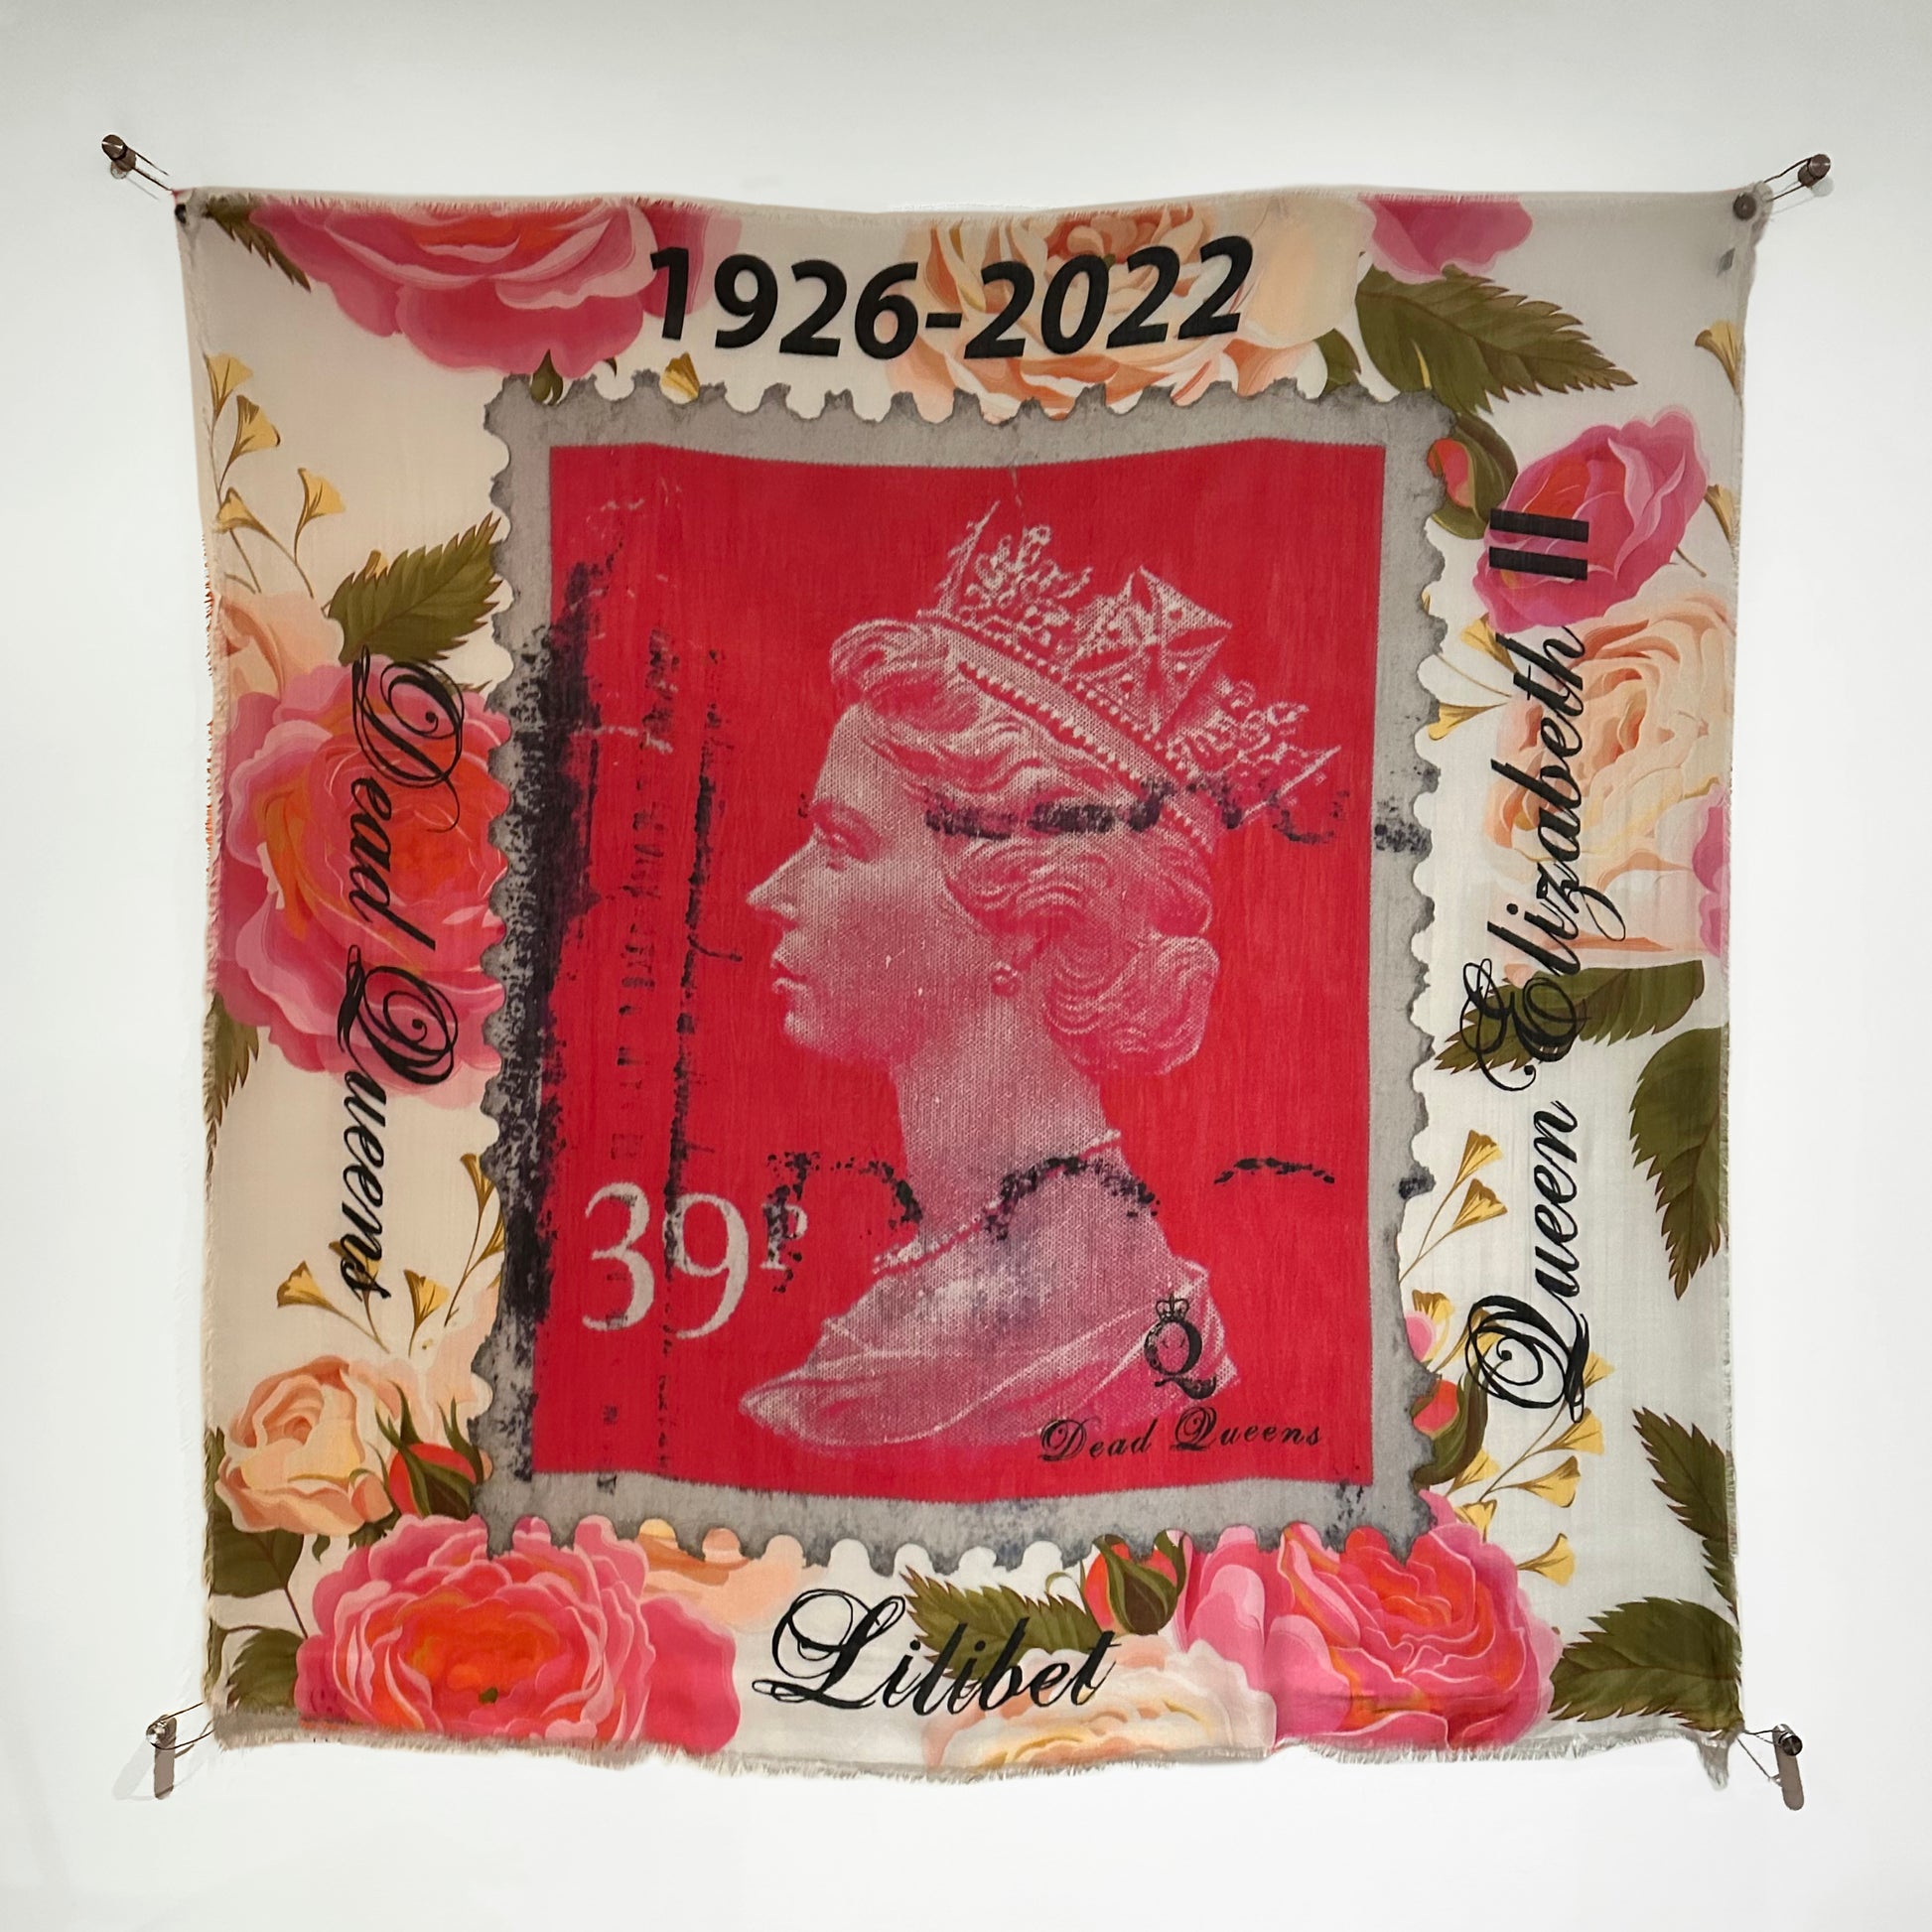 Queen Elizabeth II Floral Stamp Scarf -  Wall Hanging - Dead Queens